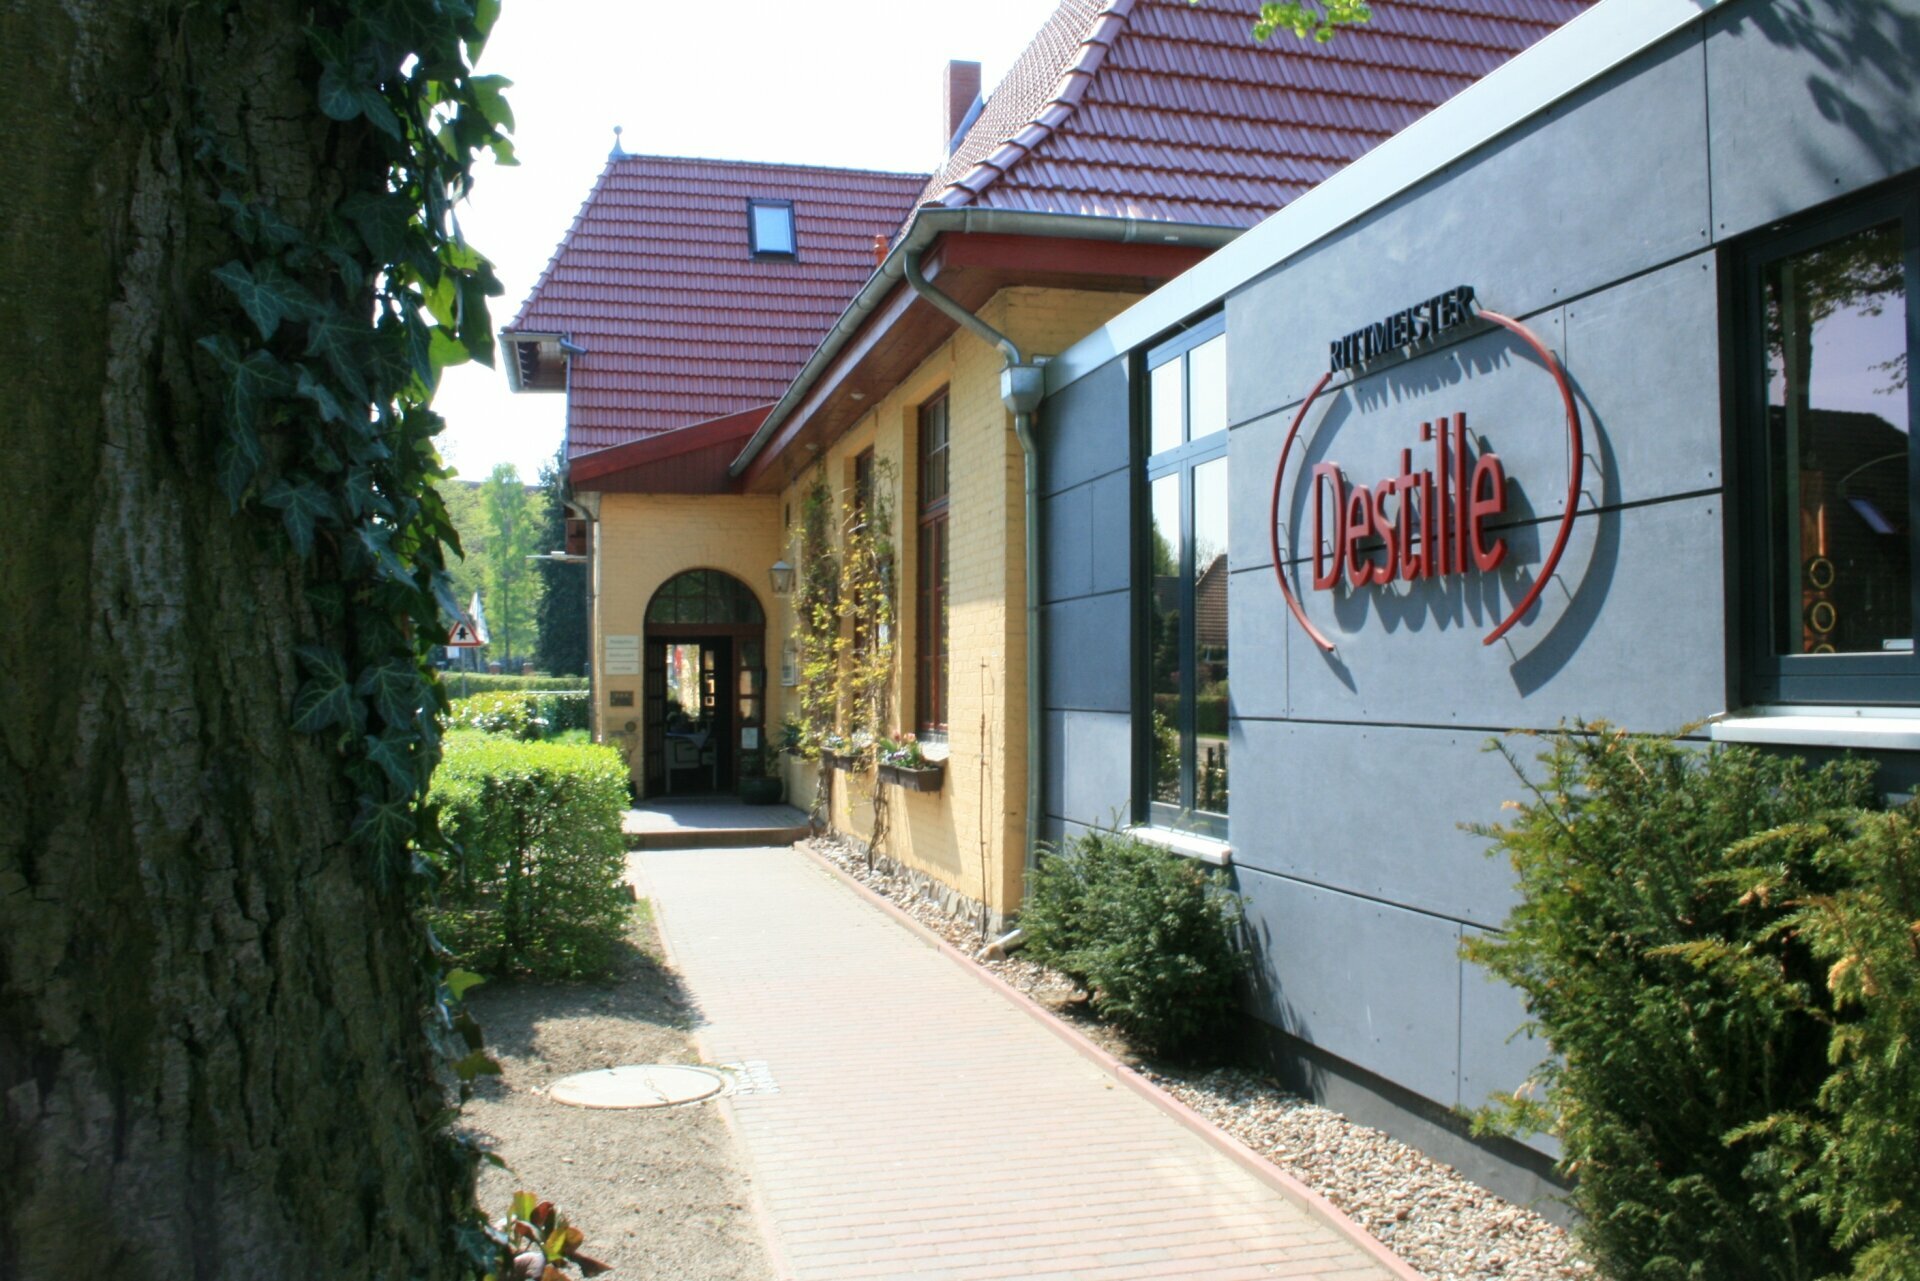 4 Tage Wellness-Wohlfühl-Zeit/ Zwischen Stadt  Land Landhotel Rittmeister in Rostock, Mecklenburg-Vorpommern inkl. Halbpension